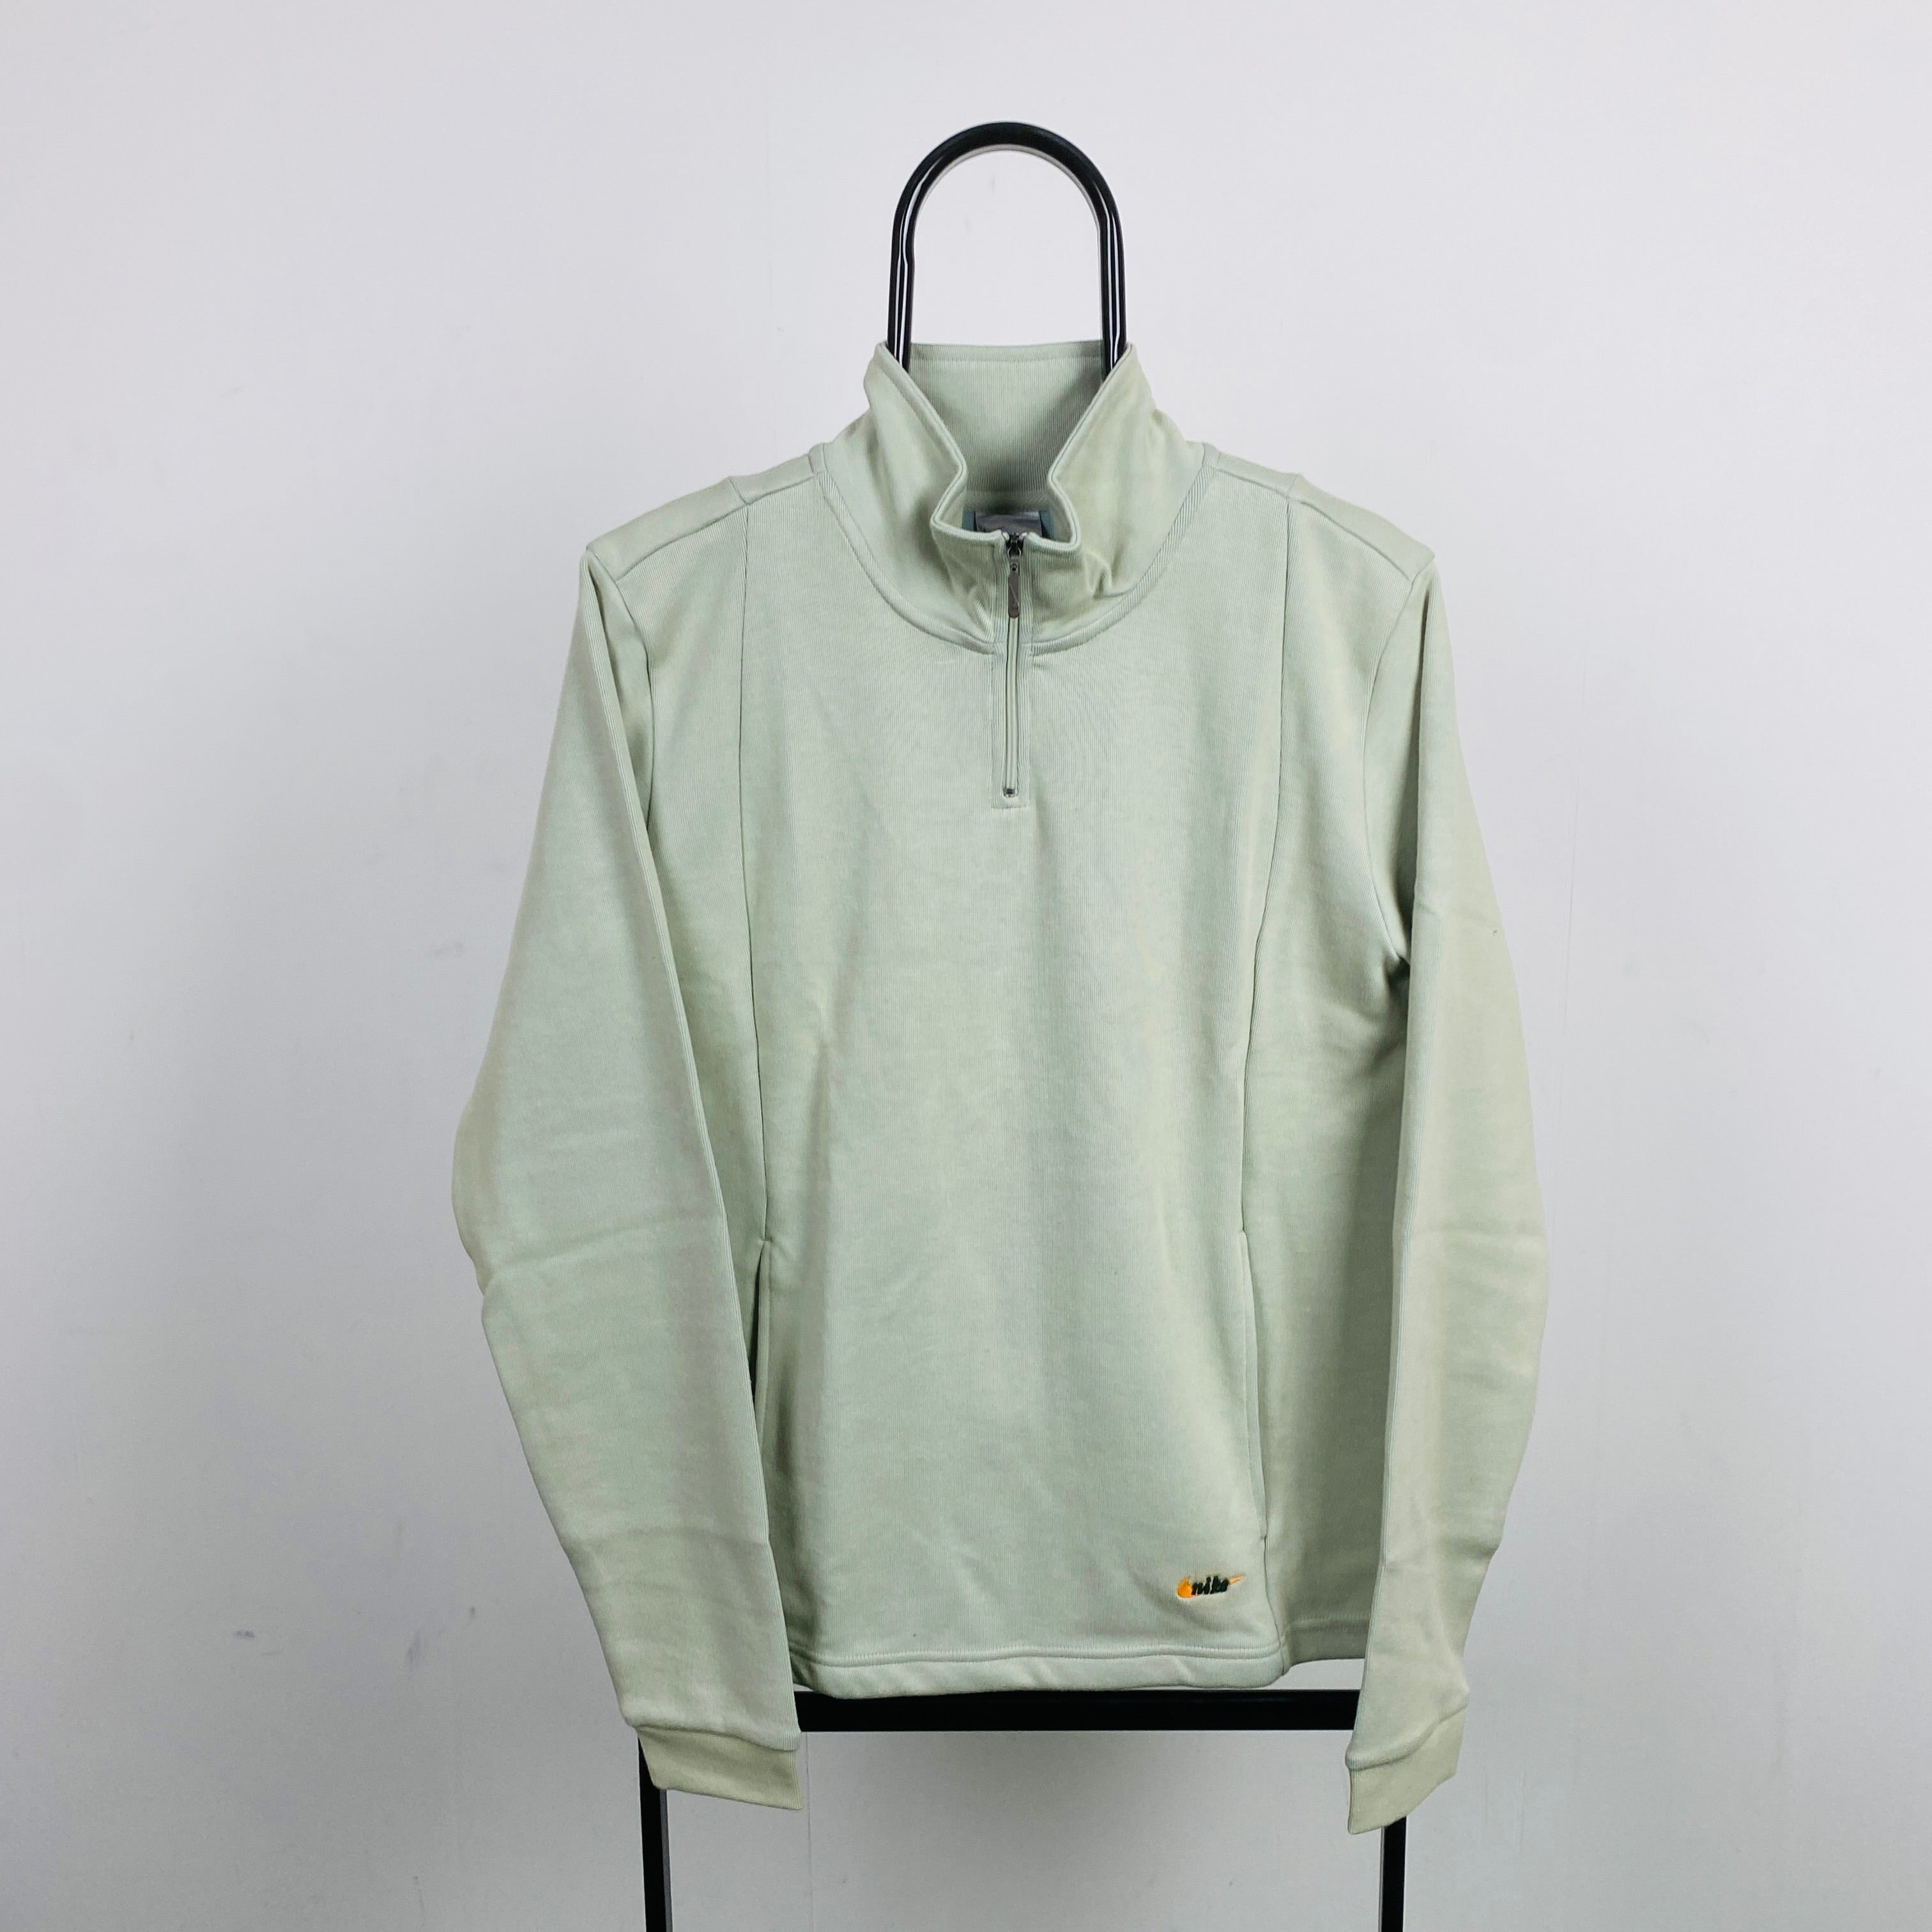 00s Nike 1/4 Zip Sweatshirt Grey Small